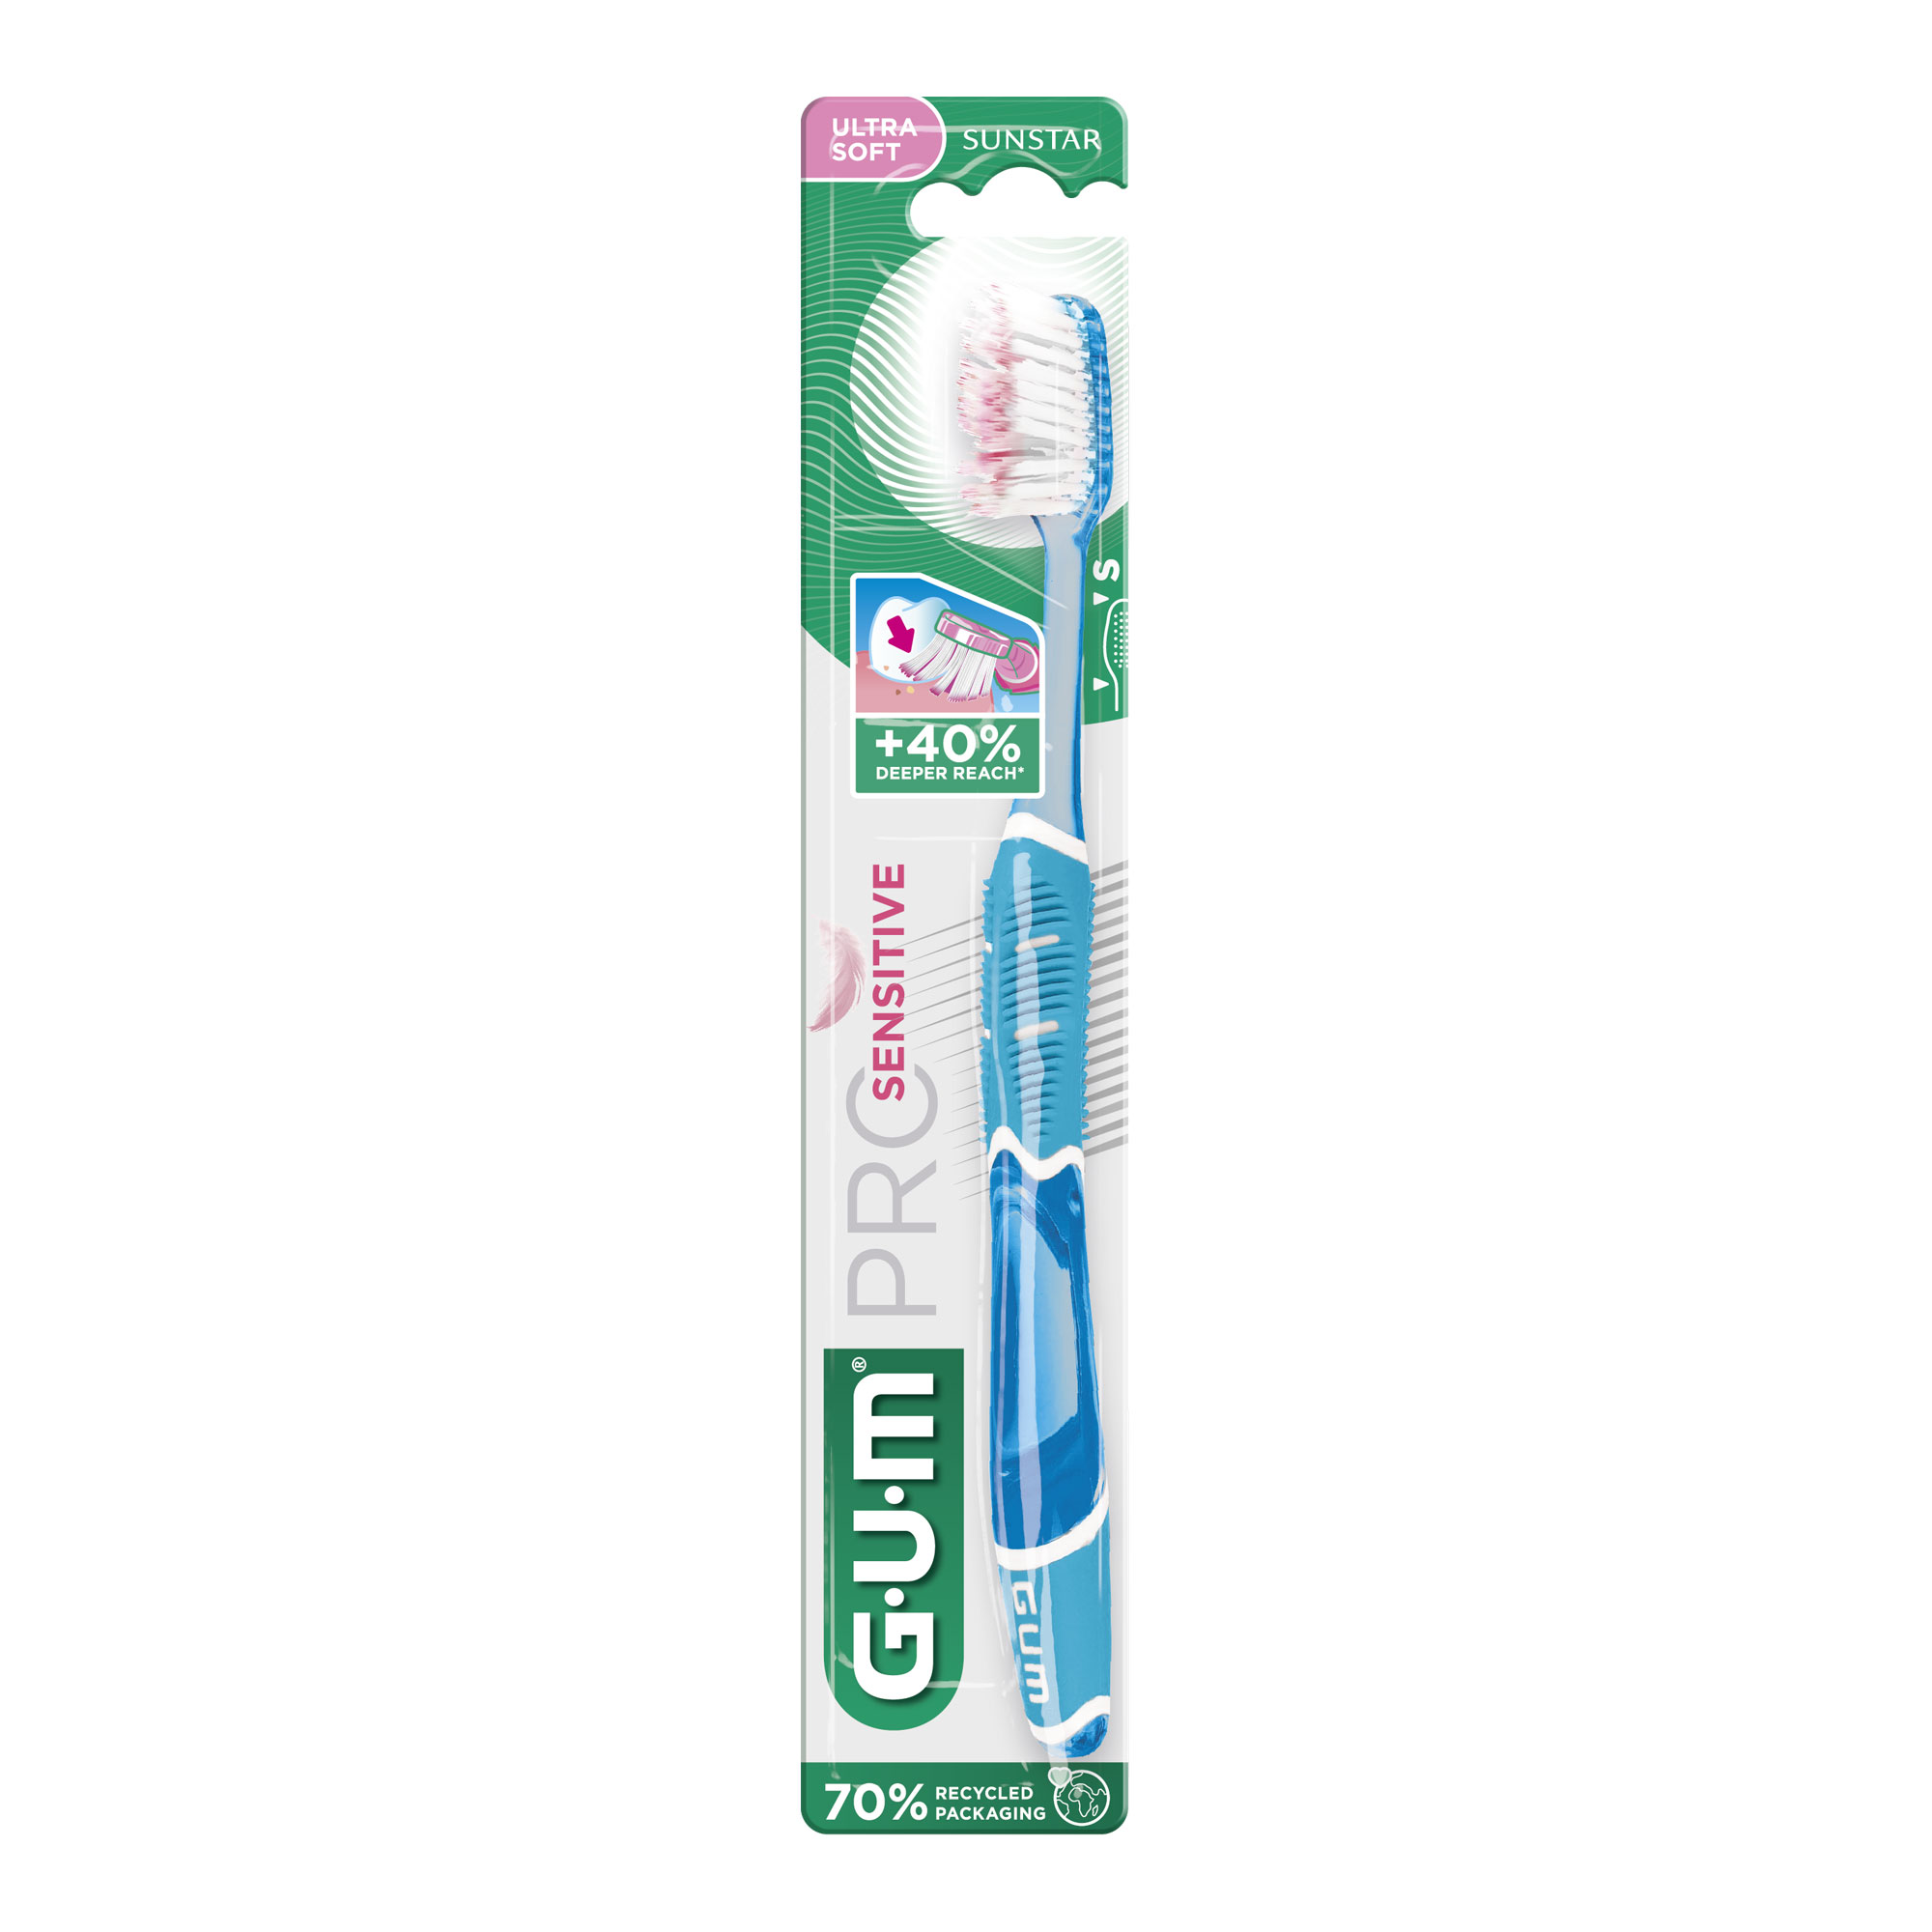 Extra weiche Zahnbürste für schmerzempfindliche Zähne.